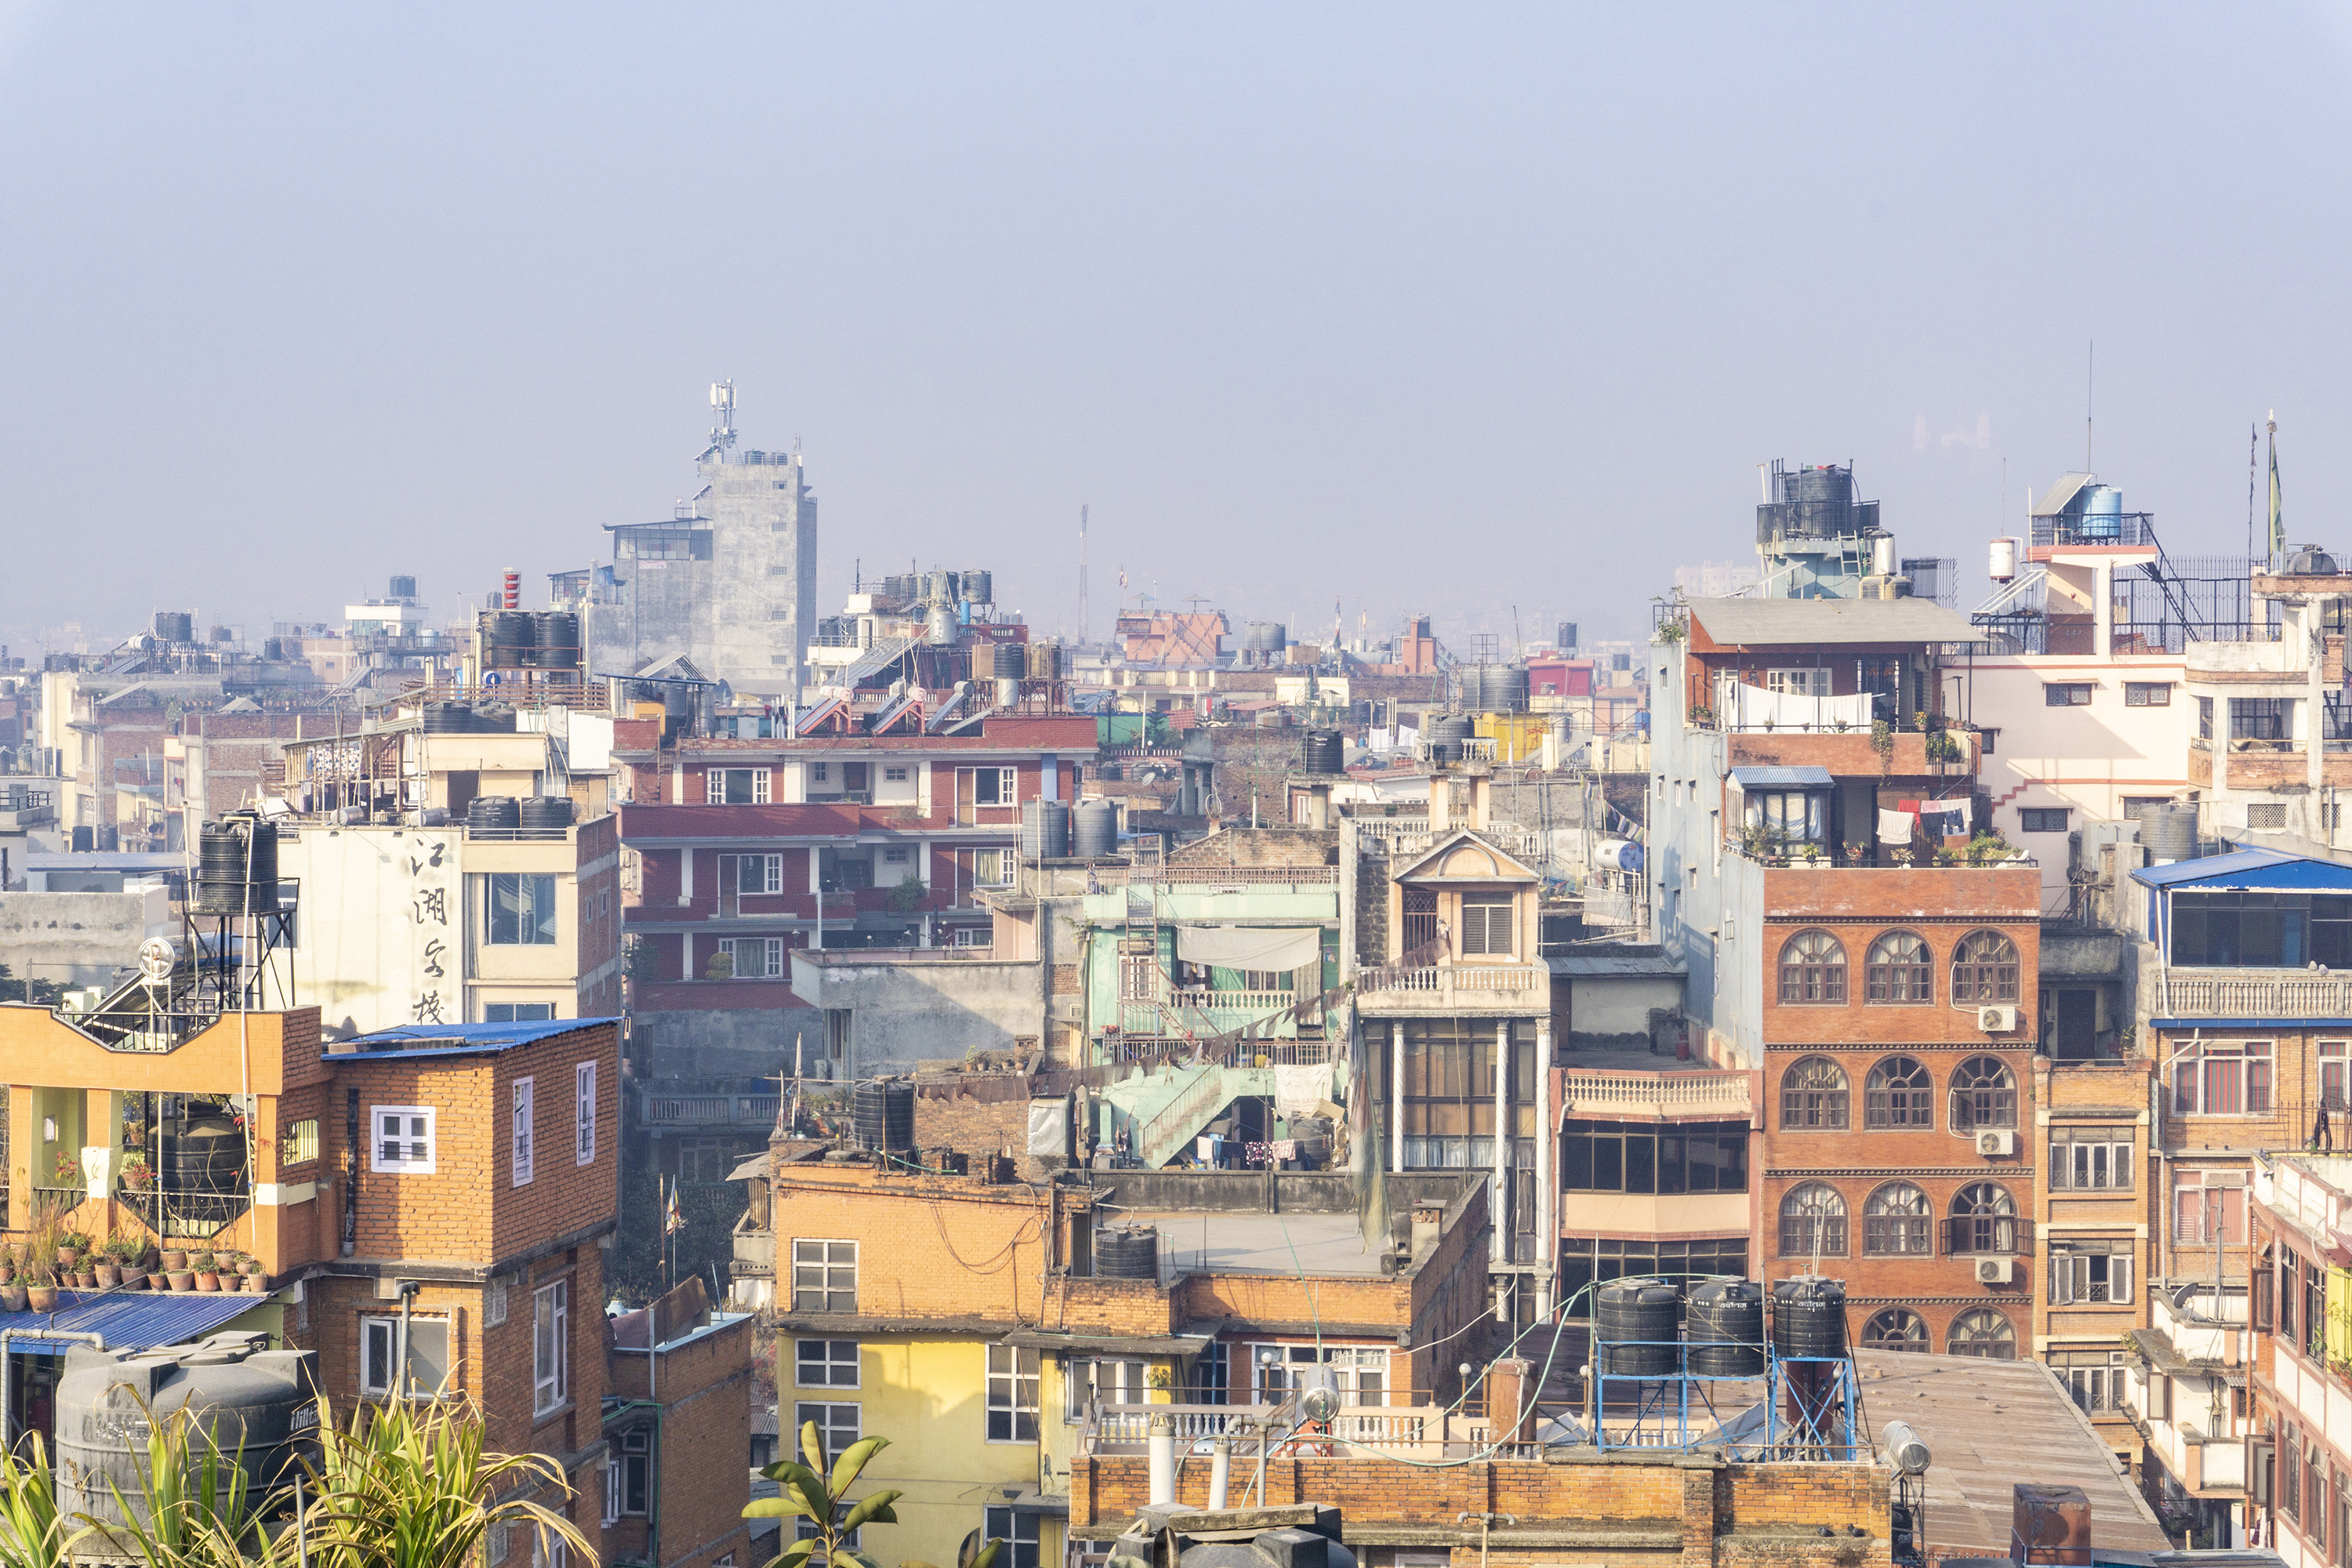 尼泊尔最大的城市,市区几乎没有什么高楼,还不如国内普通县城